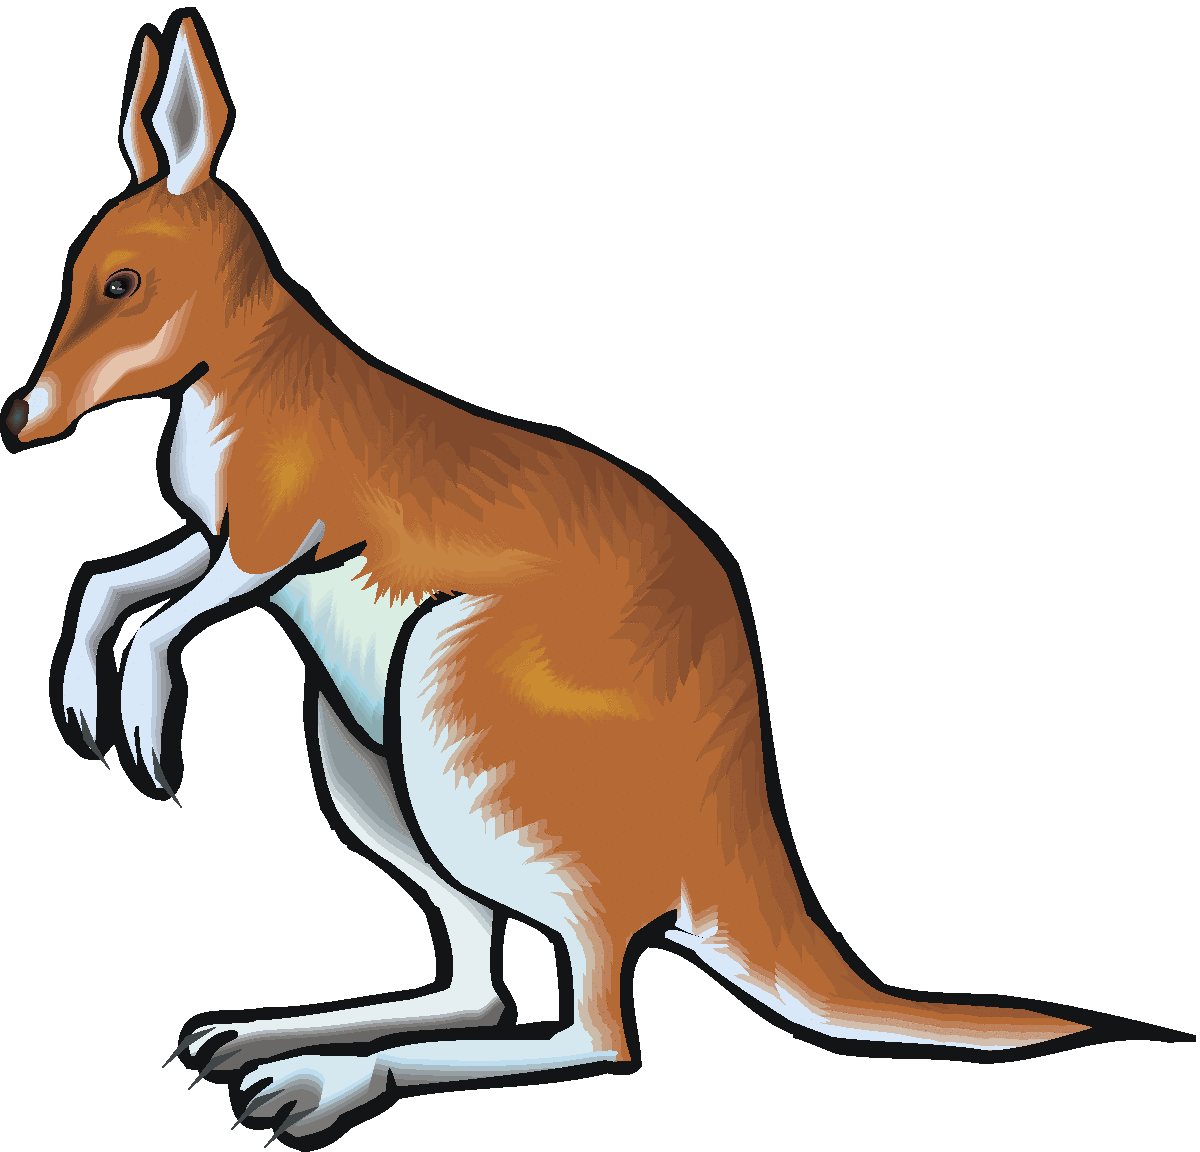 kangaroo care clipart - photo #13